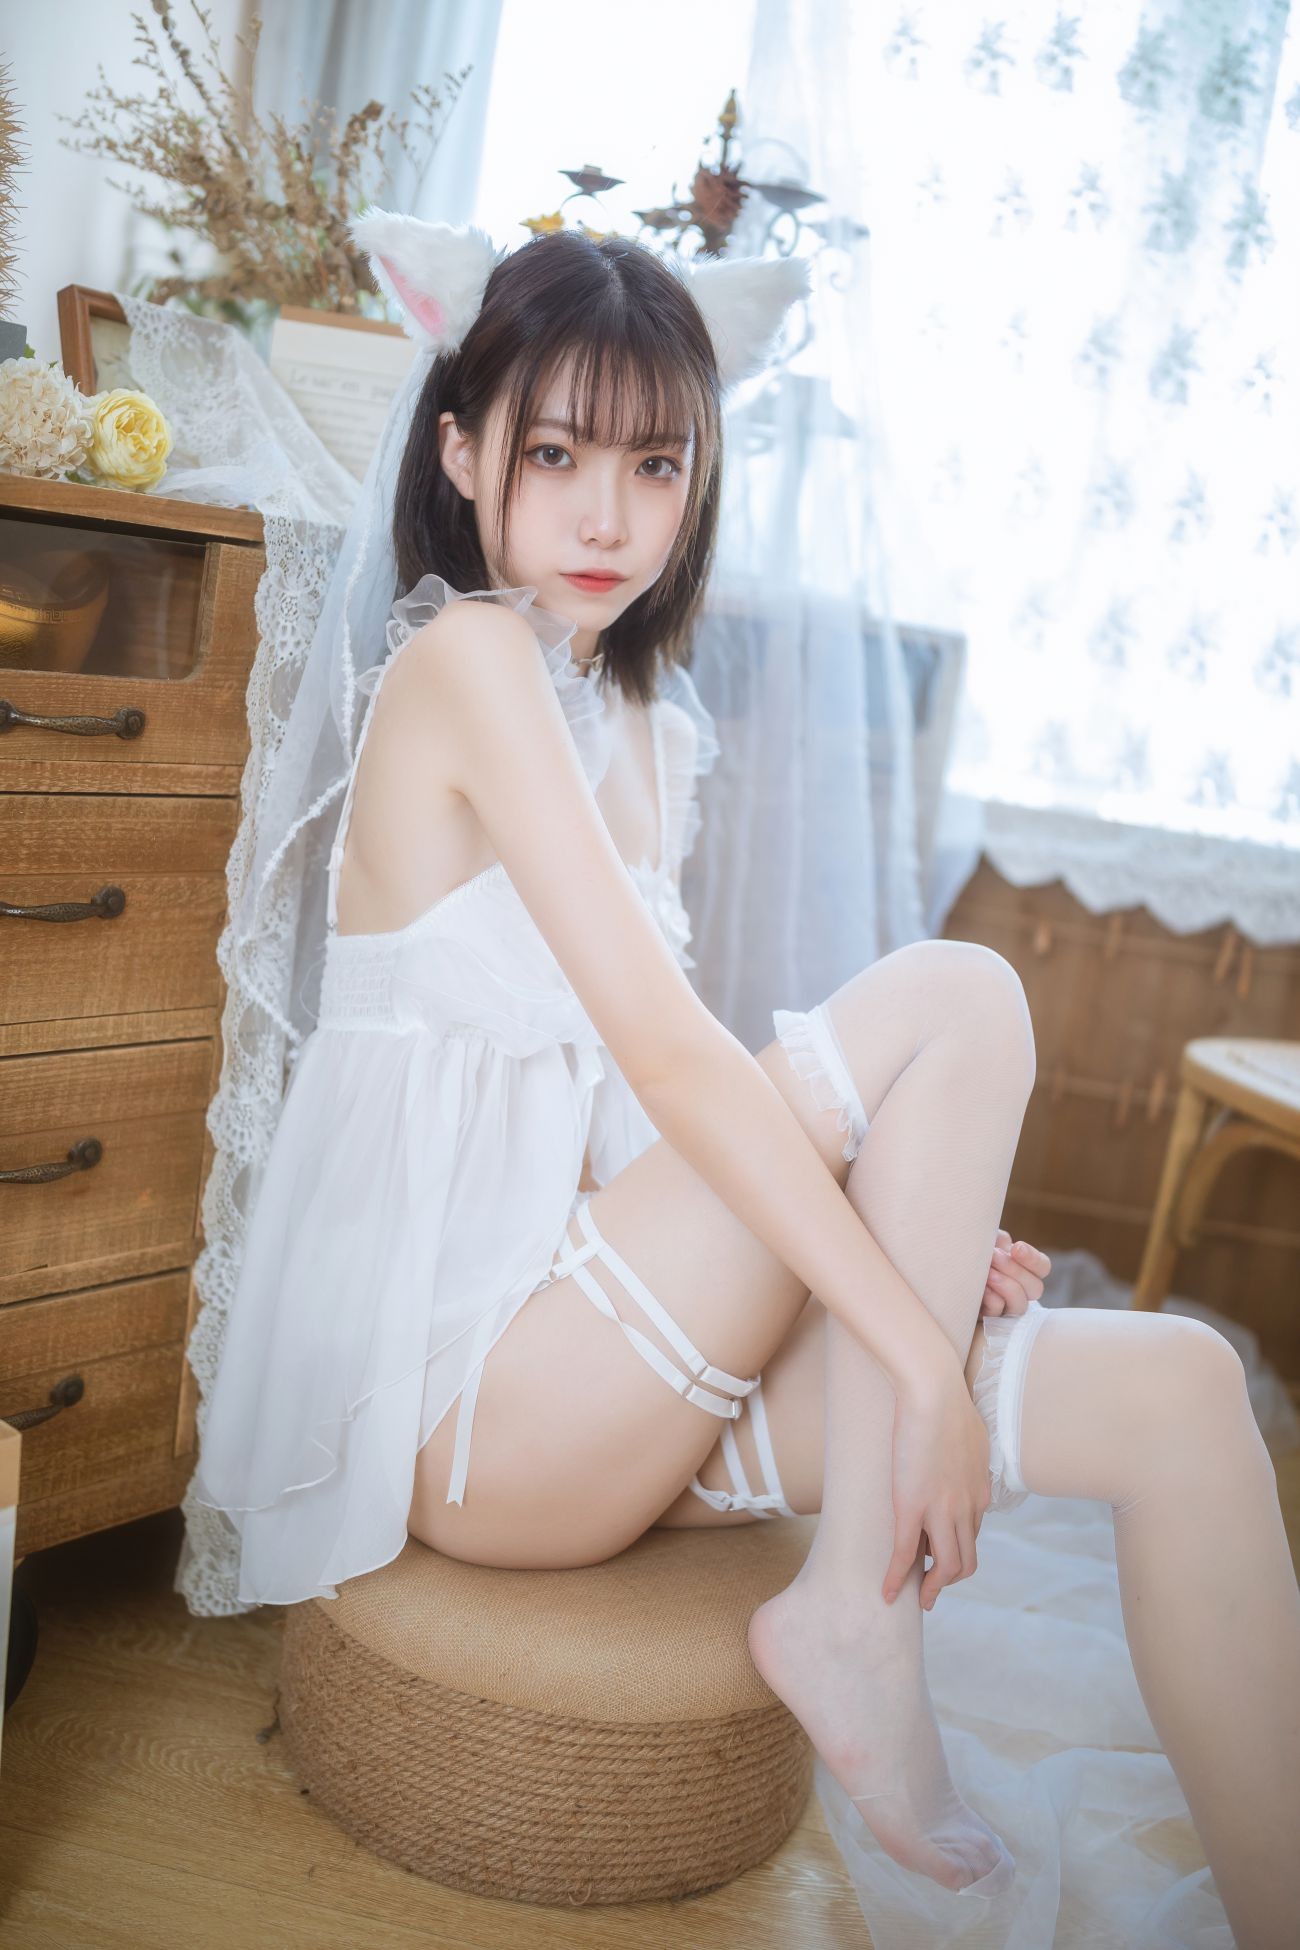 微博美少女许岚Cosplay性感写真少女白色裙 (17)